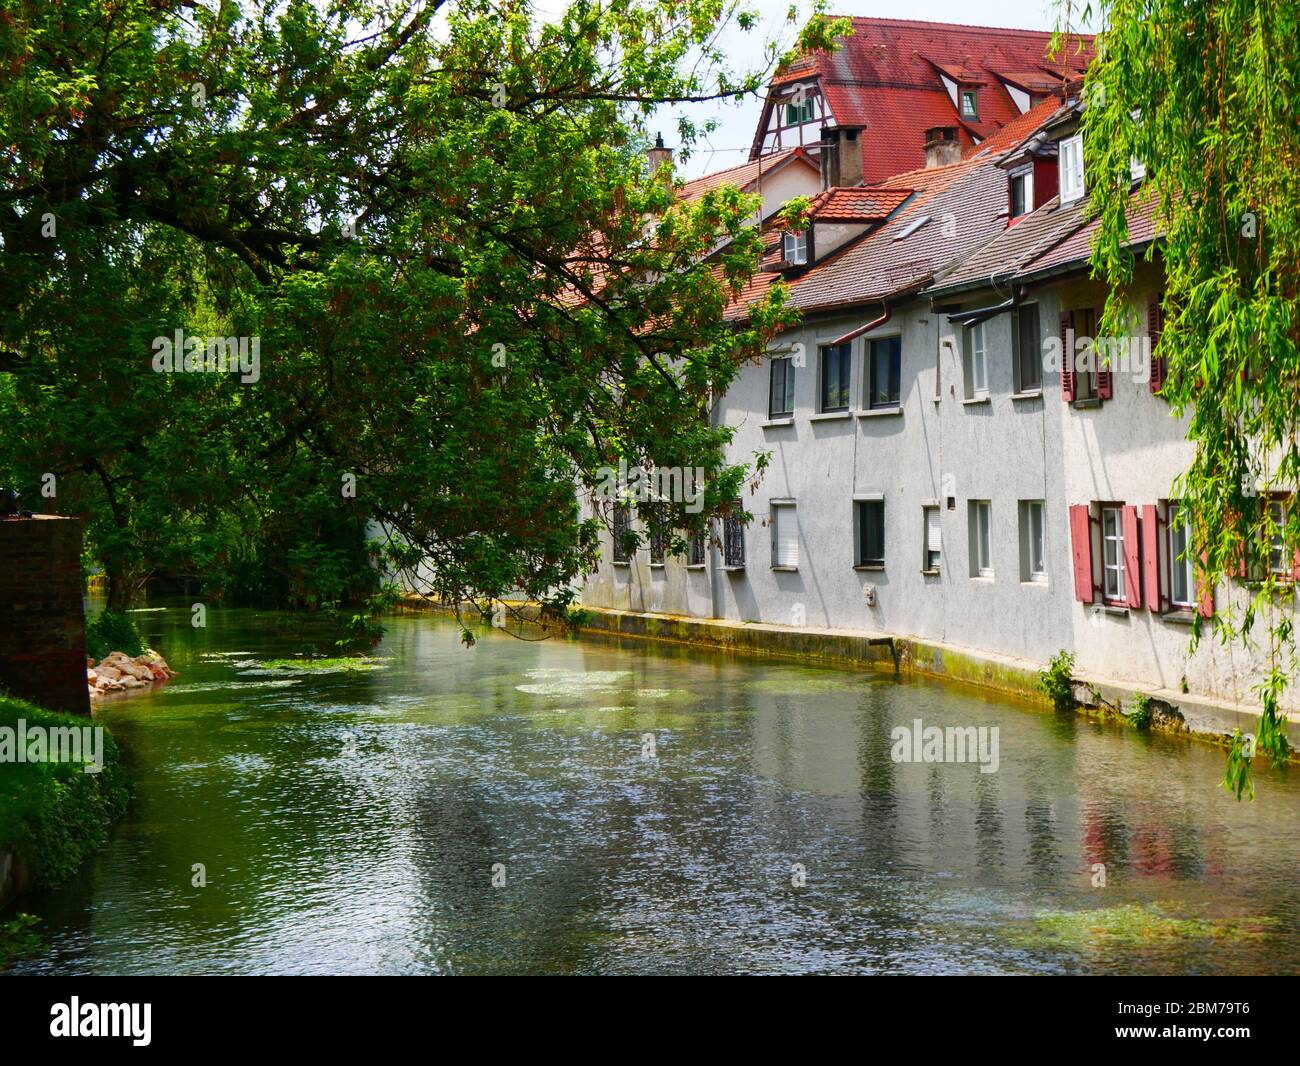 Ulm, Allemagne : l'un des nombreux canaux du quartier historique des pêcheurs d'Ulm Banque D'Images